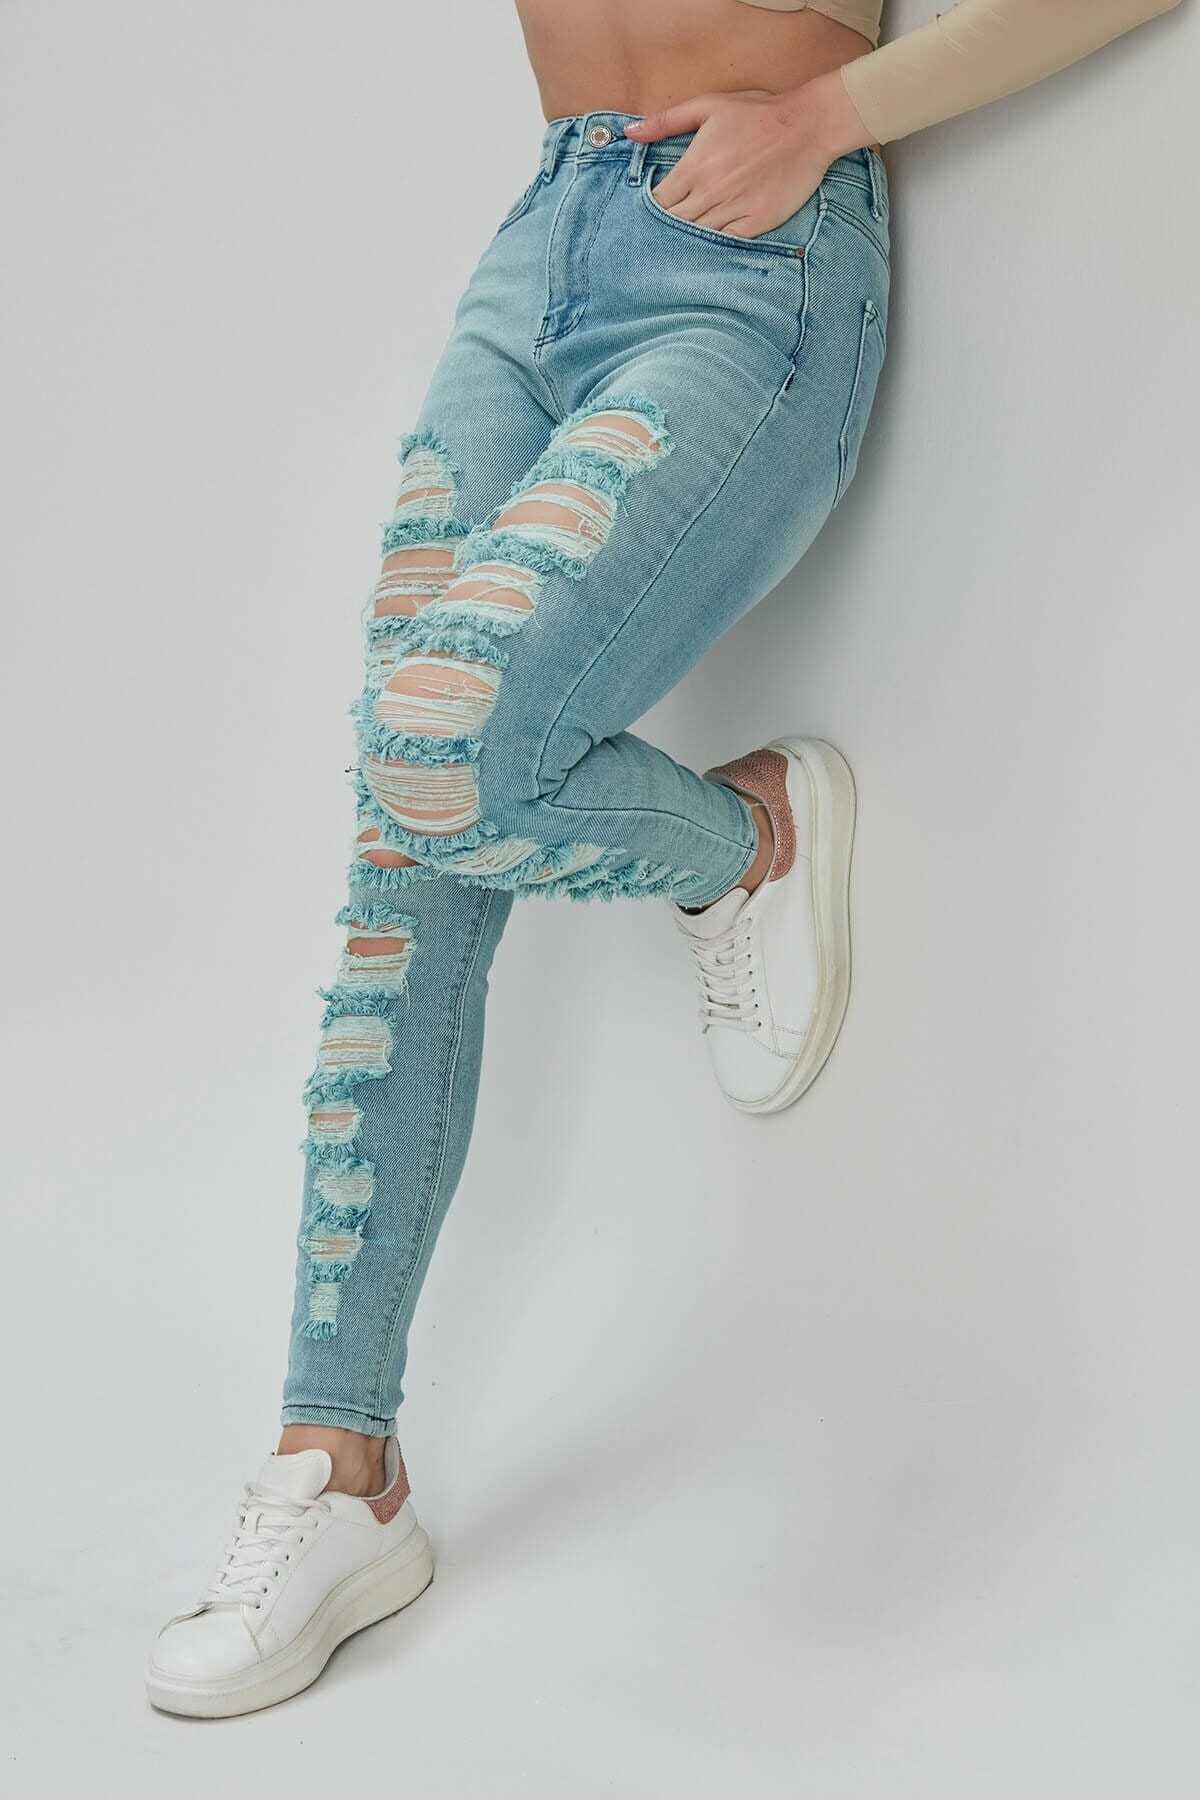 فروش اینترنتی شلوار جین زنانه با قیمت شیک Modaca رنگ لاجوردی کد ty92070841